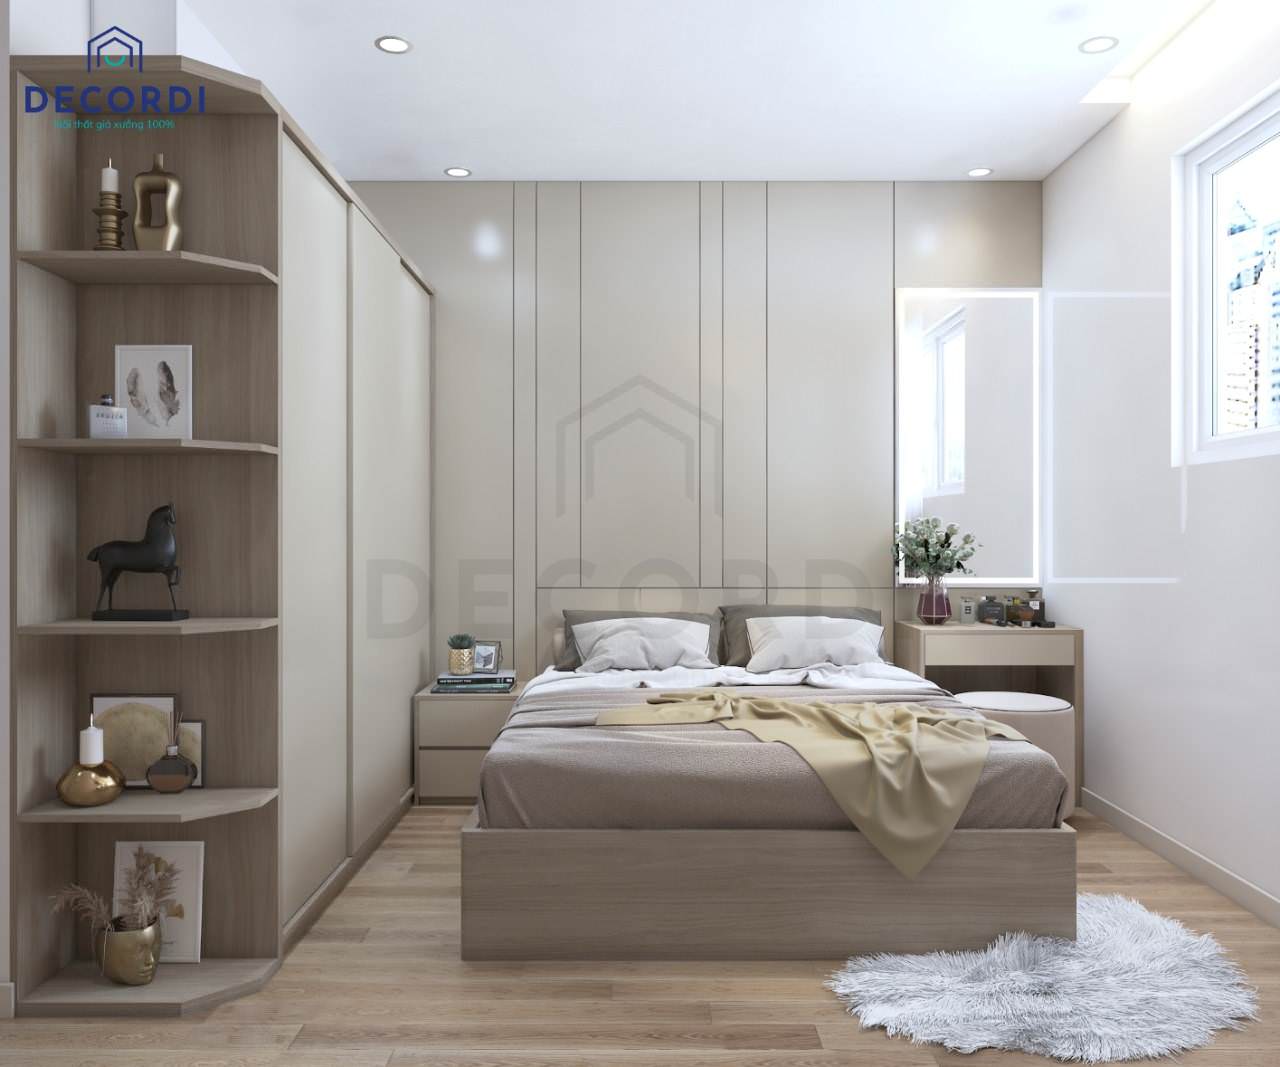 Thiết kế nội thất phòng ngủ master hiện đại với gam màu kem sang trọng